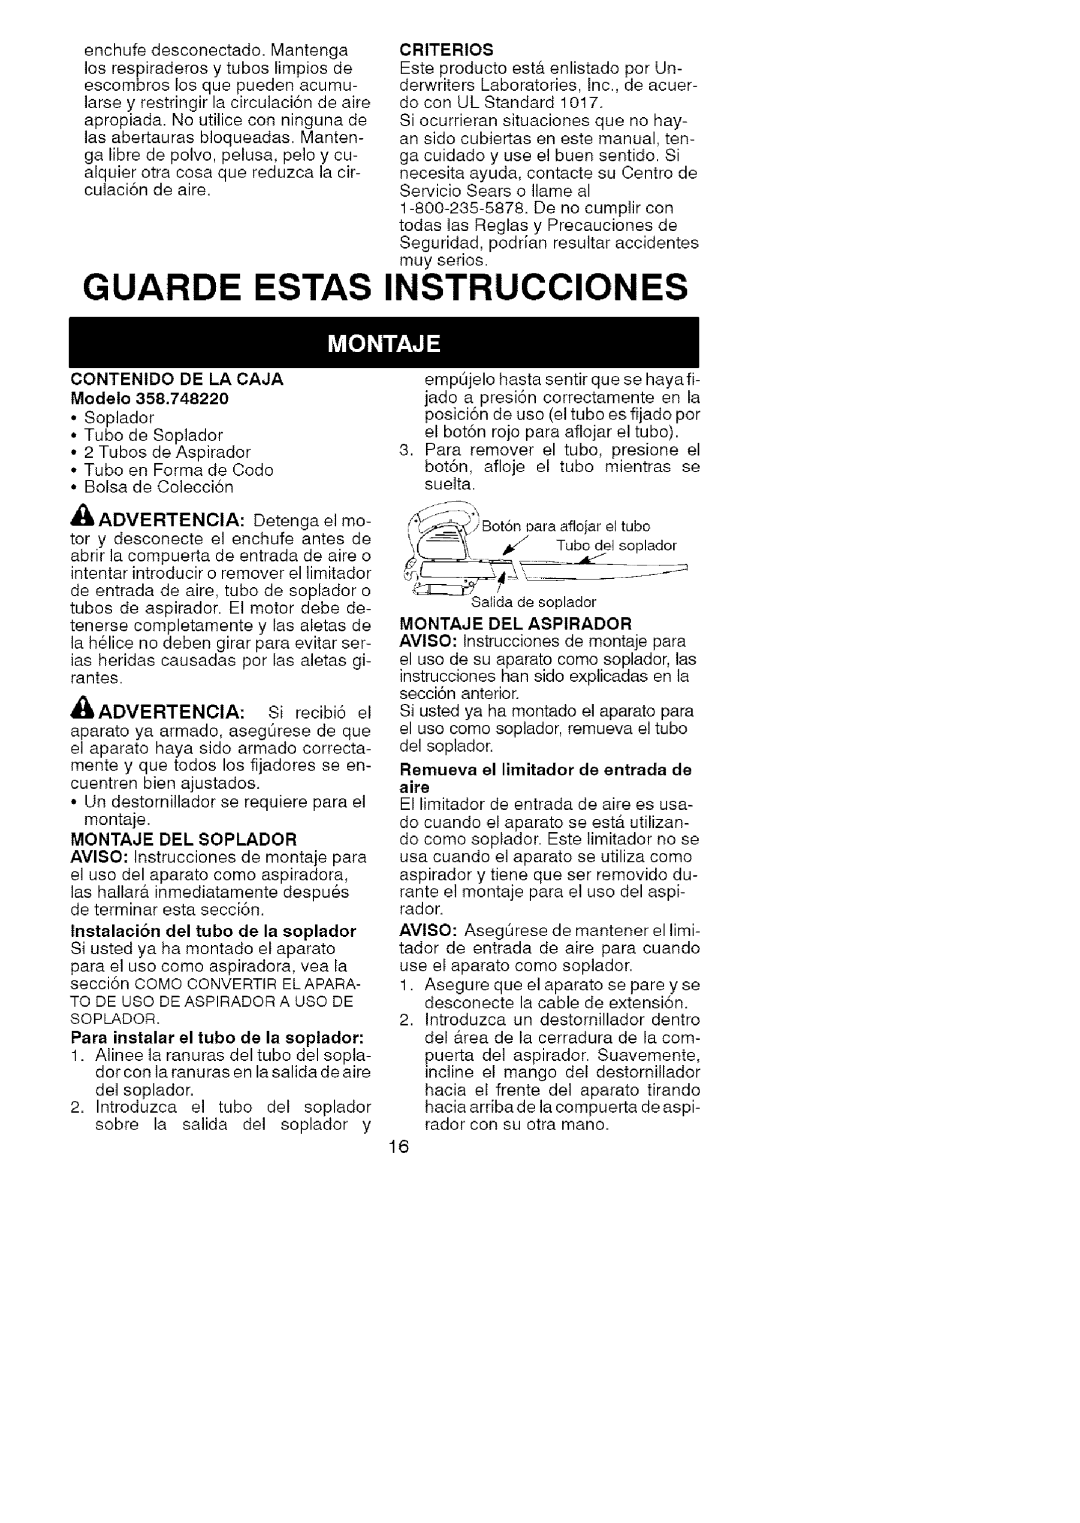 Craftsman 74822 manual Guarde Estas, Instrucciones, Tubodesoplador, CONTENIDO DE LA CAJA Modelo, Montaje Del Soplador 